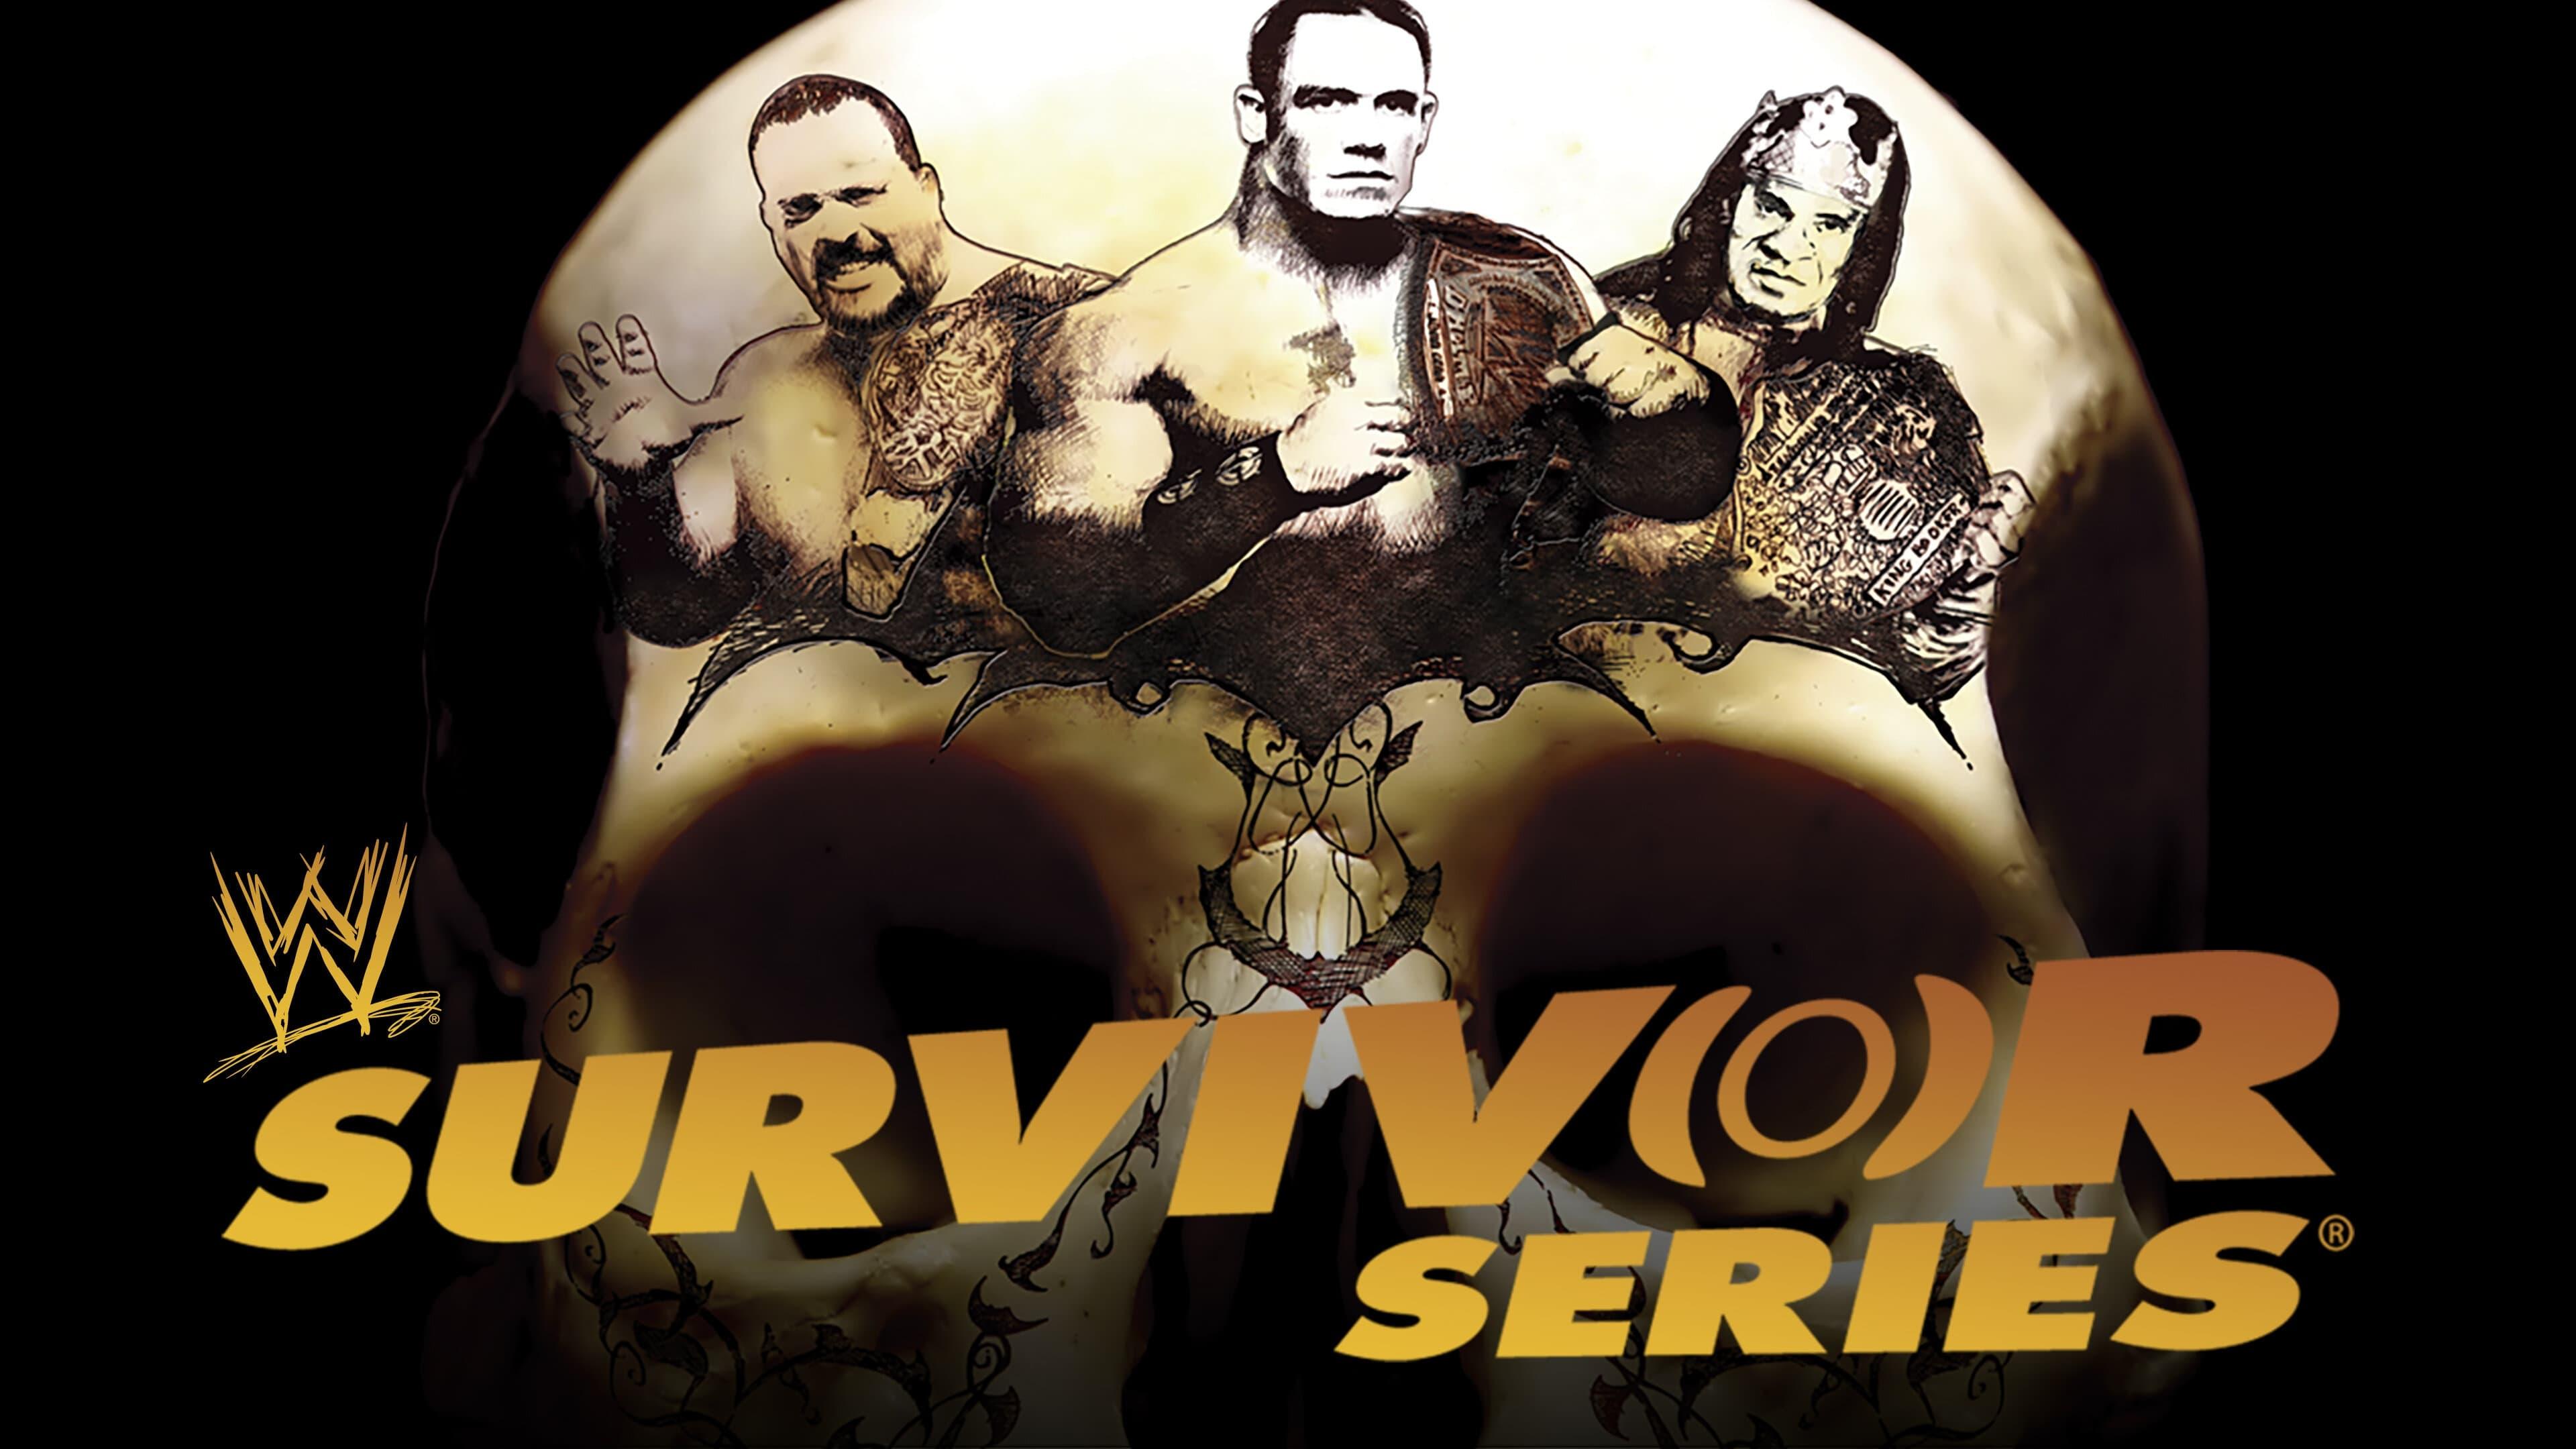 WWE Survivor Series 2006 backdrop